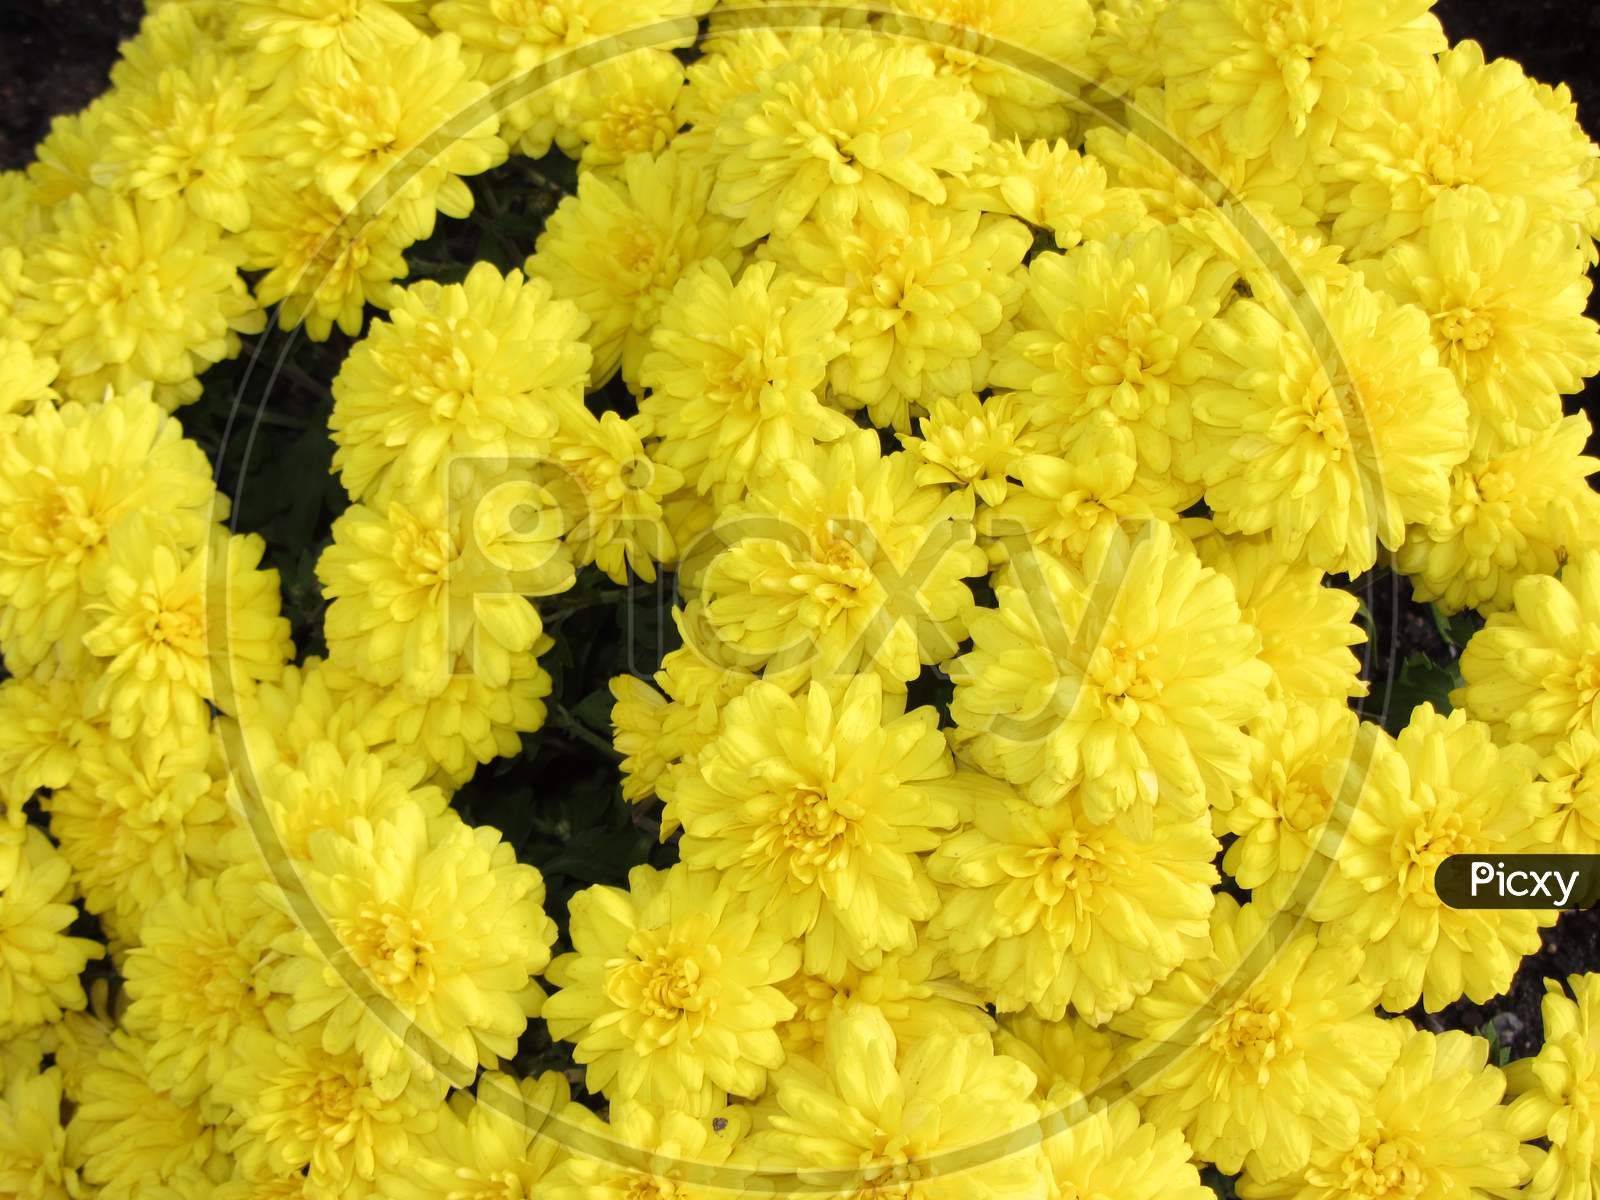 Yellow zinnia flower